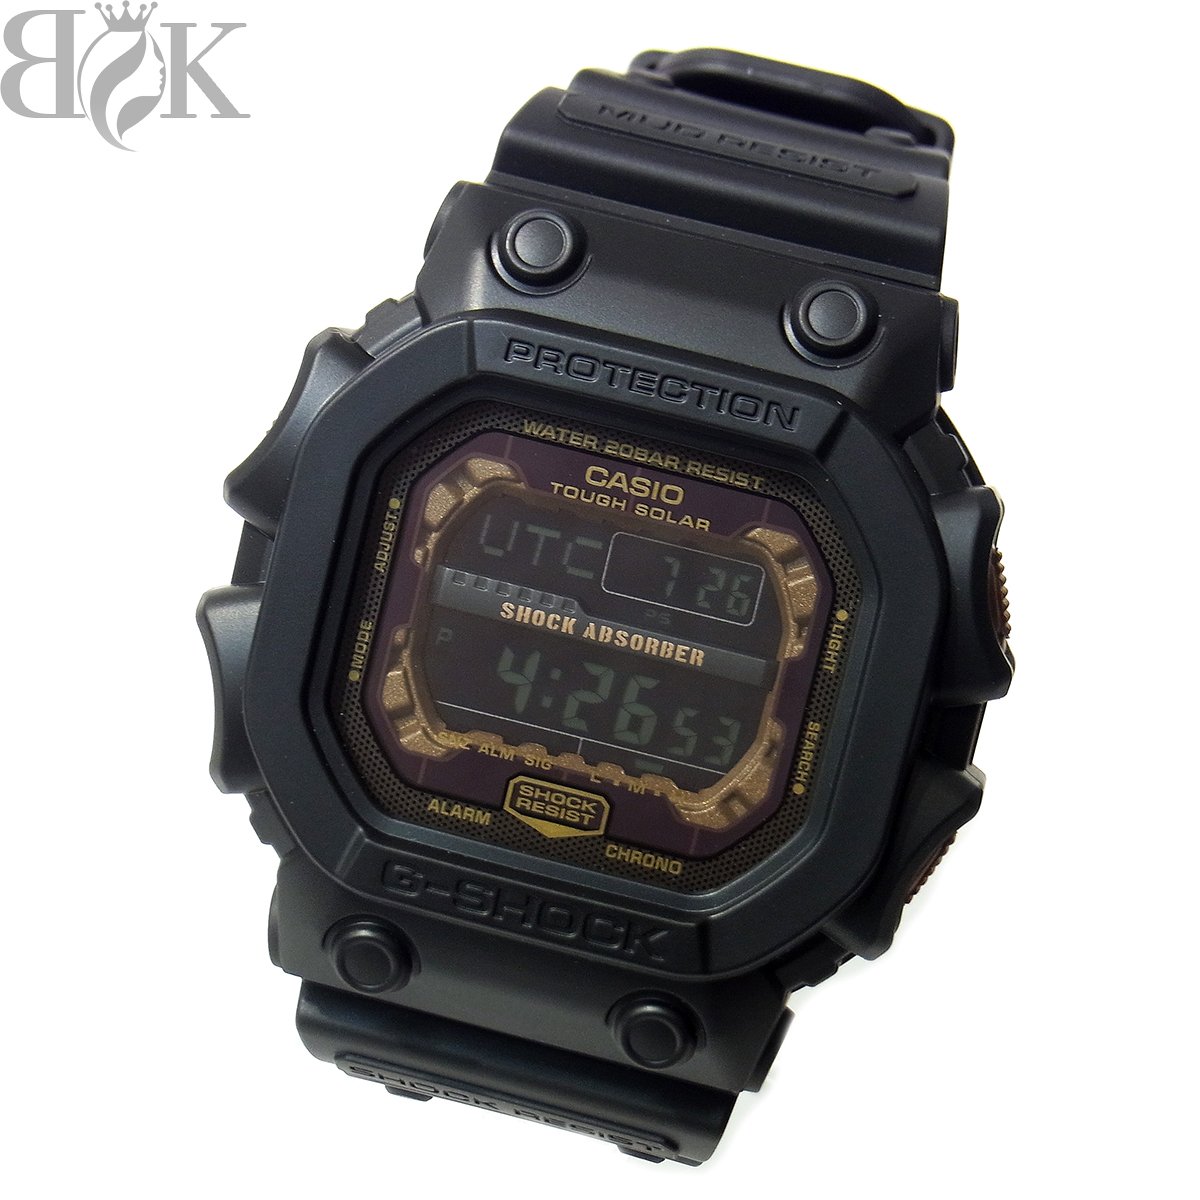 推定未使用品 カシオ G-SHOCK GX-56RC-1JF メンズ 腕時計 デジタル ソーラー ブラック ブラウン系 動作品 CASIO 〓 【中古】